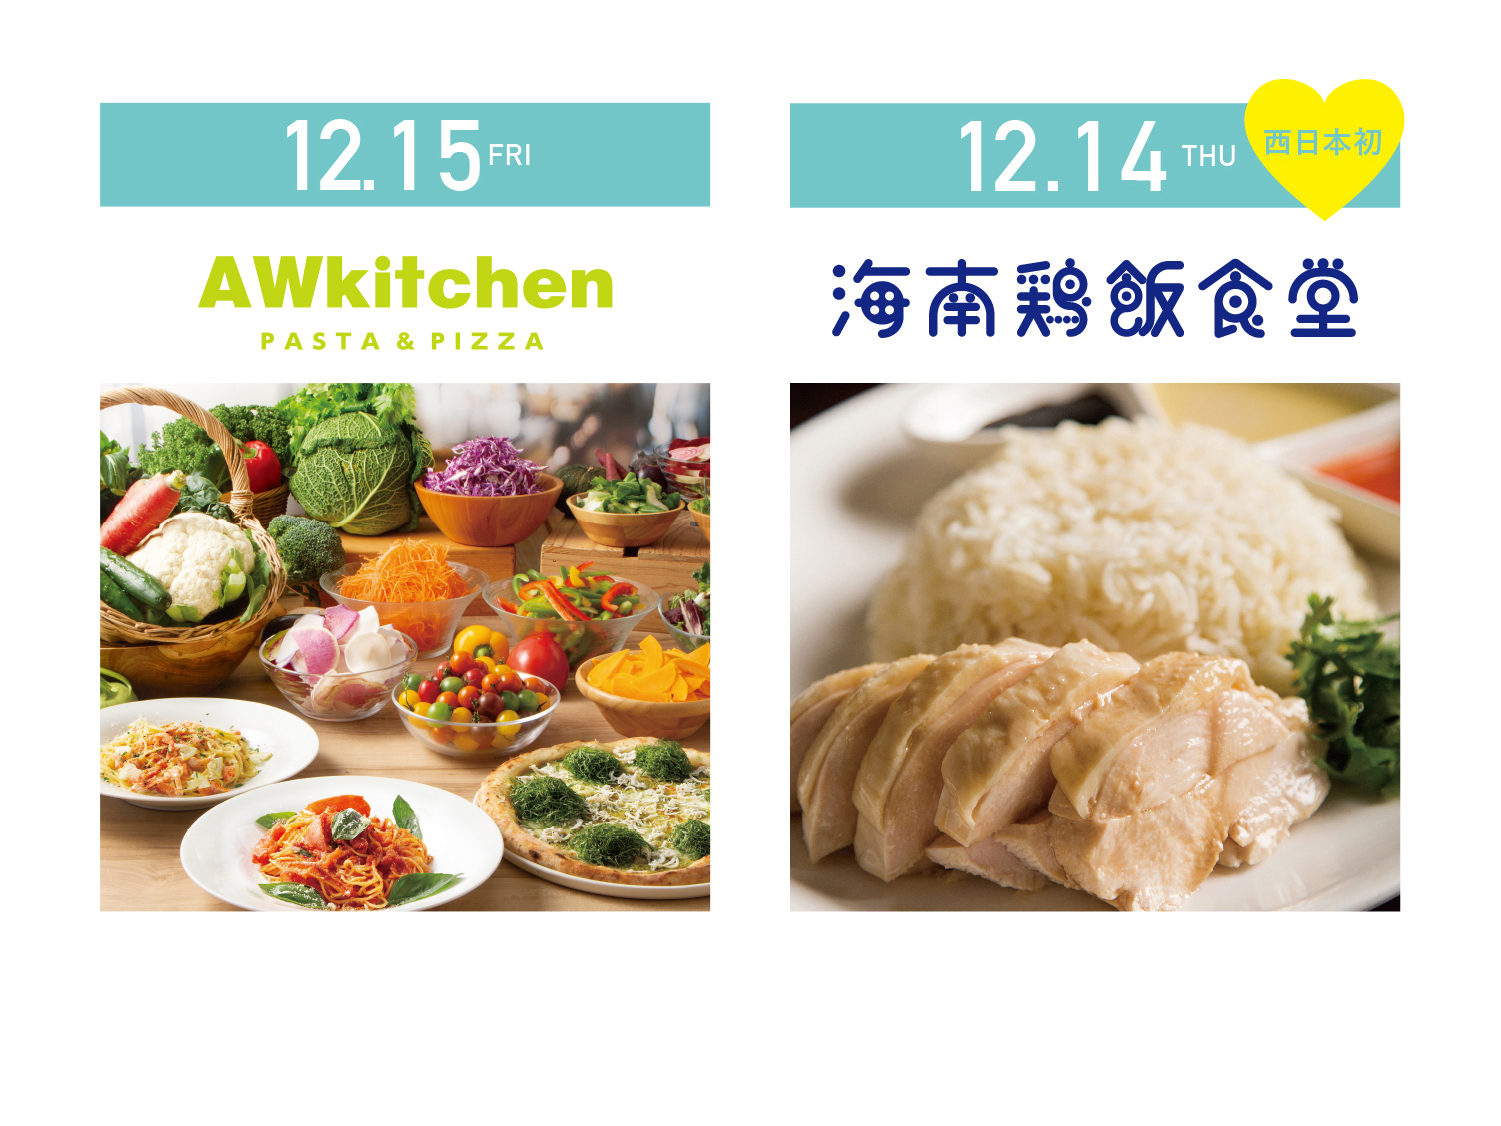 キュン2 AW kitchen、海南鶏飯食堂